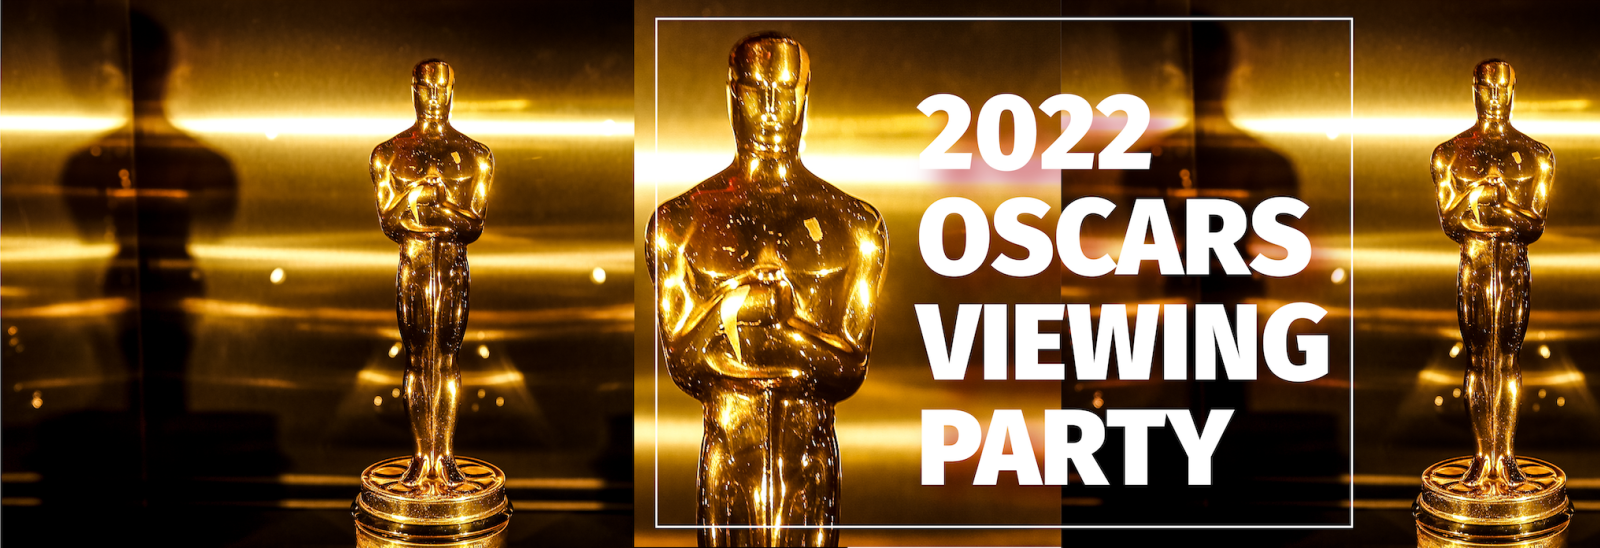 Oscars Viewing Party San Jose Playhouse